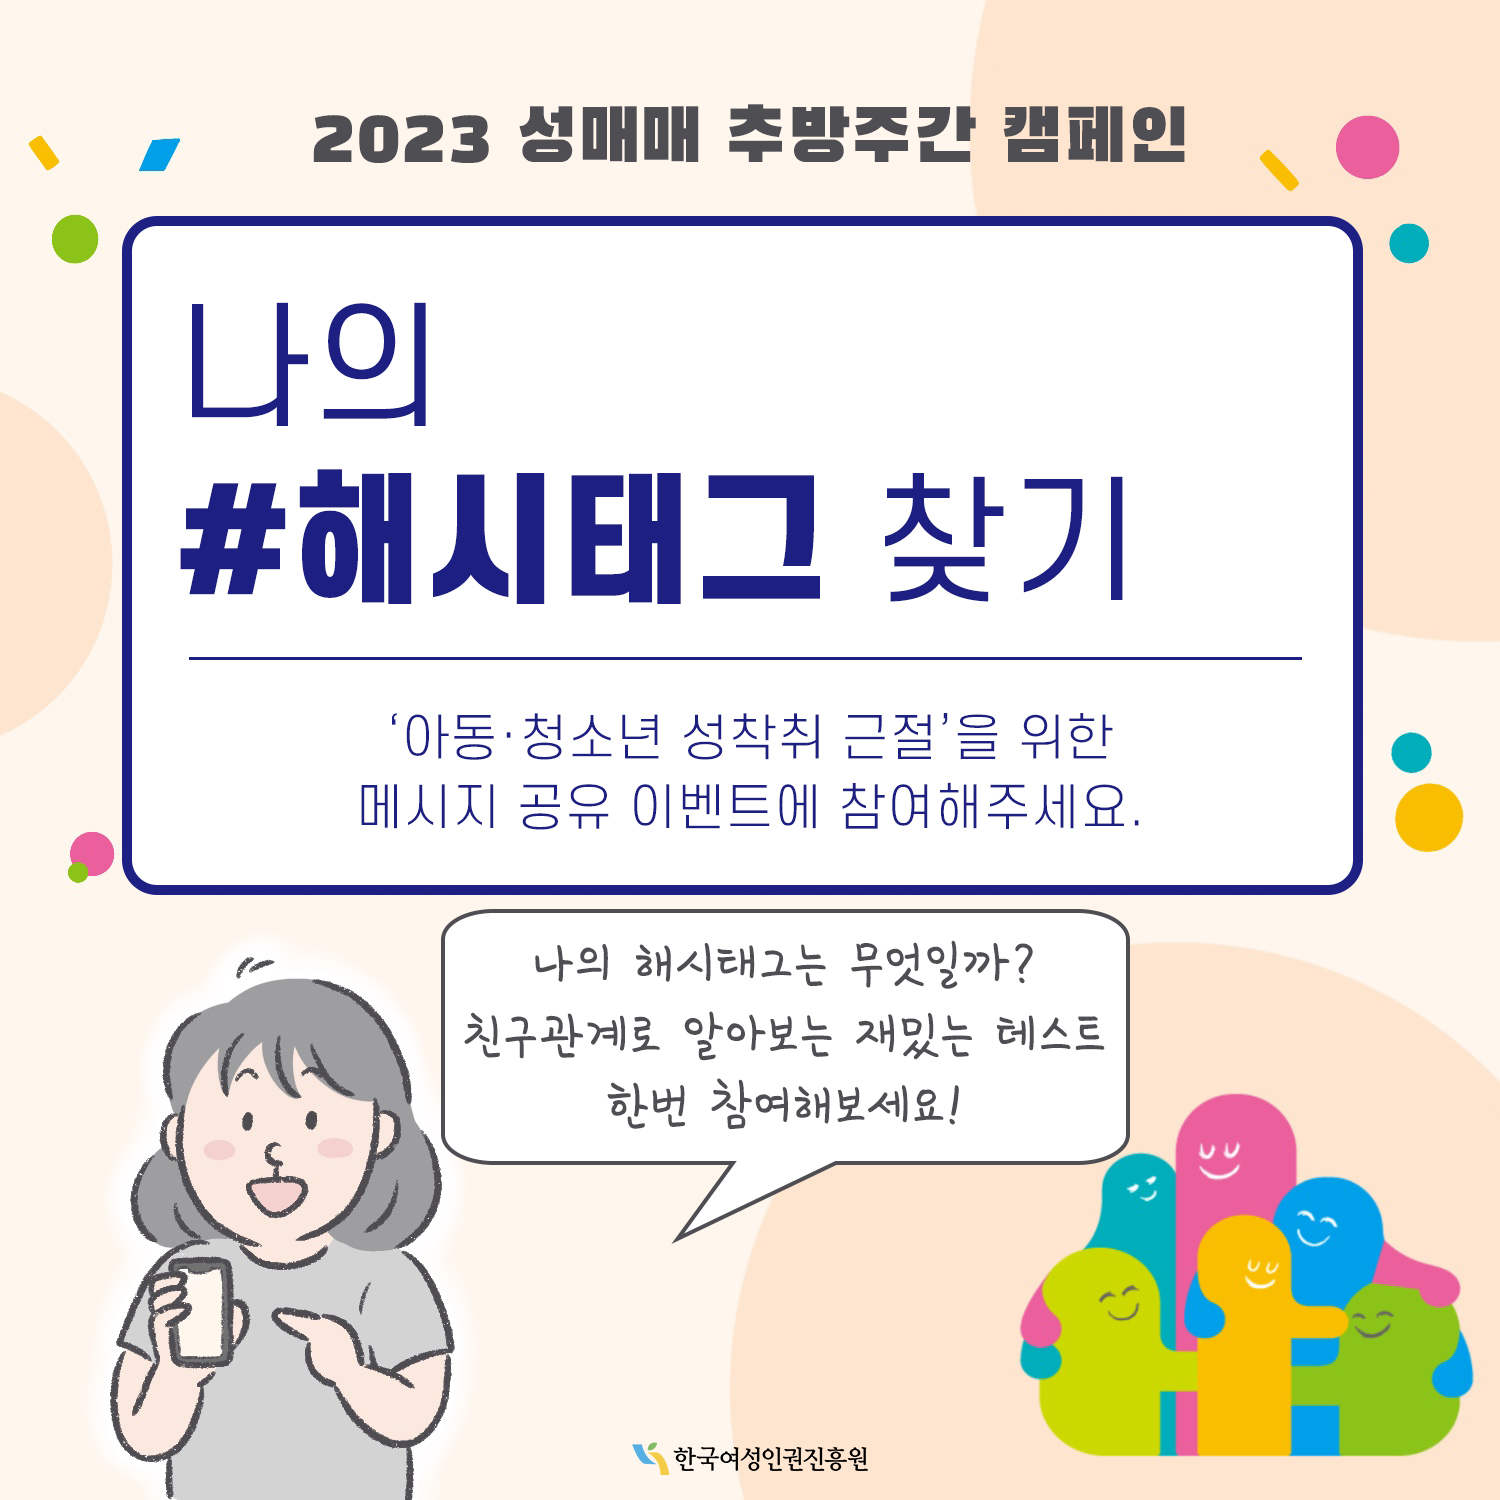 2023 성매매 추방주간 캠페인 나의 해시태그 찾기. 아동·청소년 성착취 근절을 위한 메시지 공유 이벤트에 참여해주세요. 나의 해시태그는 무엇일까? 친구관계로 알아보는 재밌는 테스트 한 번 참여해보세요! 한국여성인권진흥원